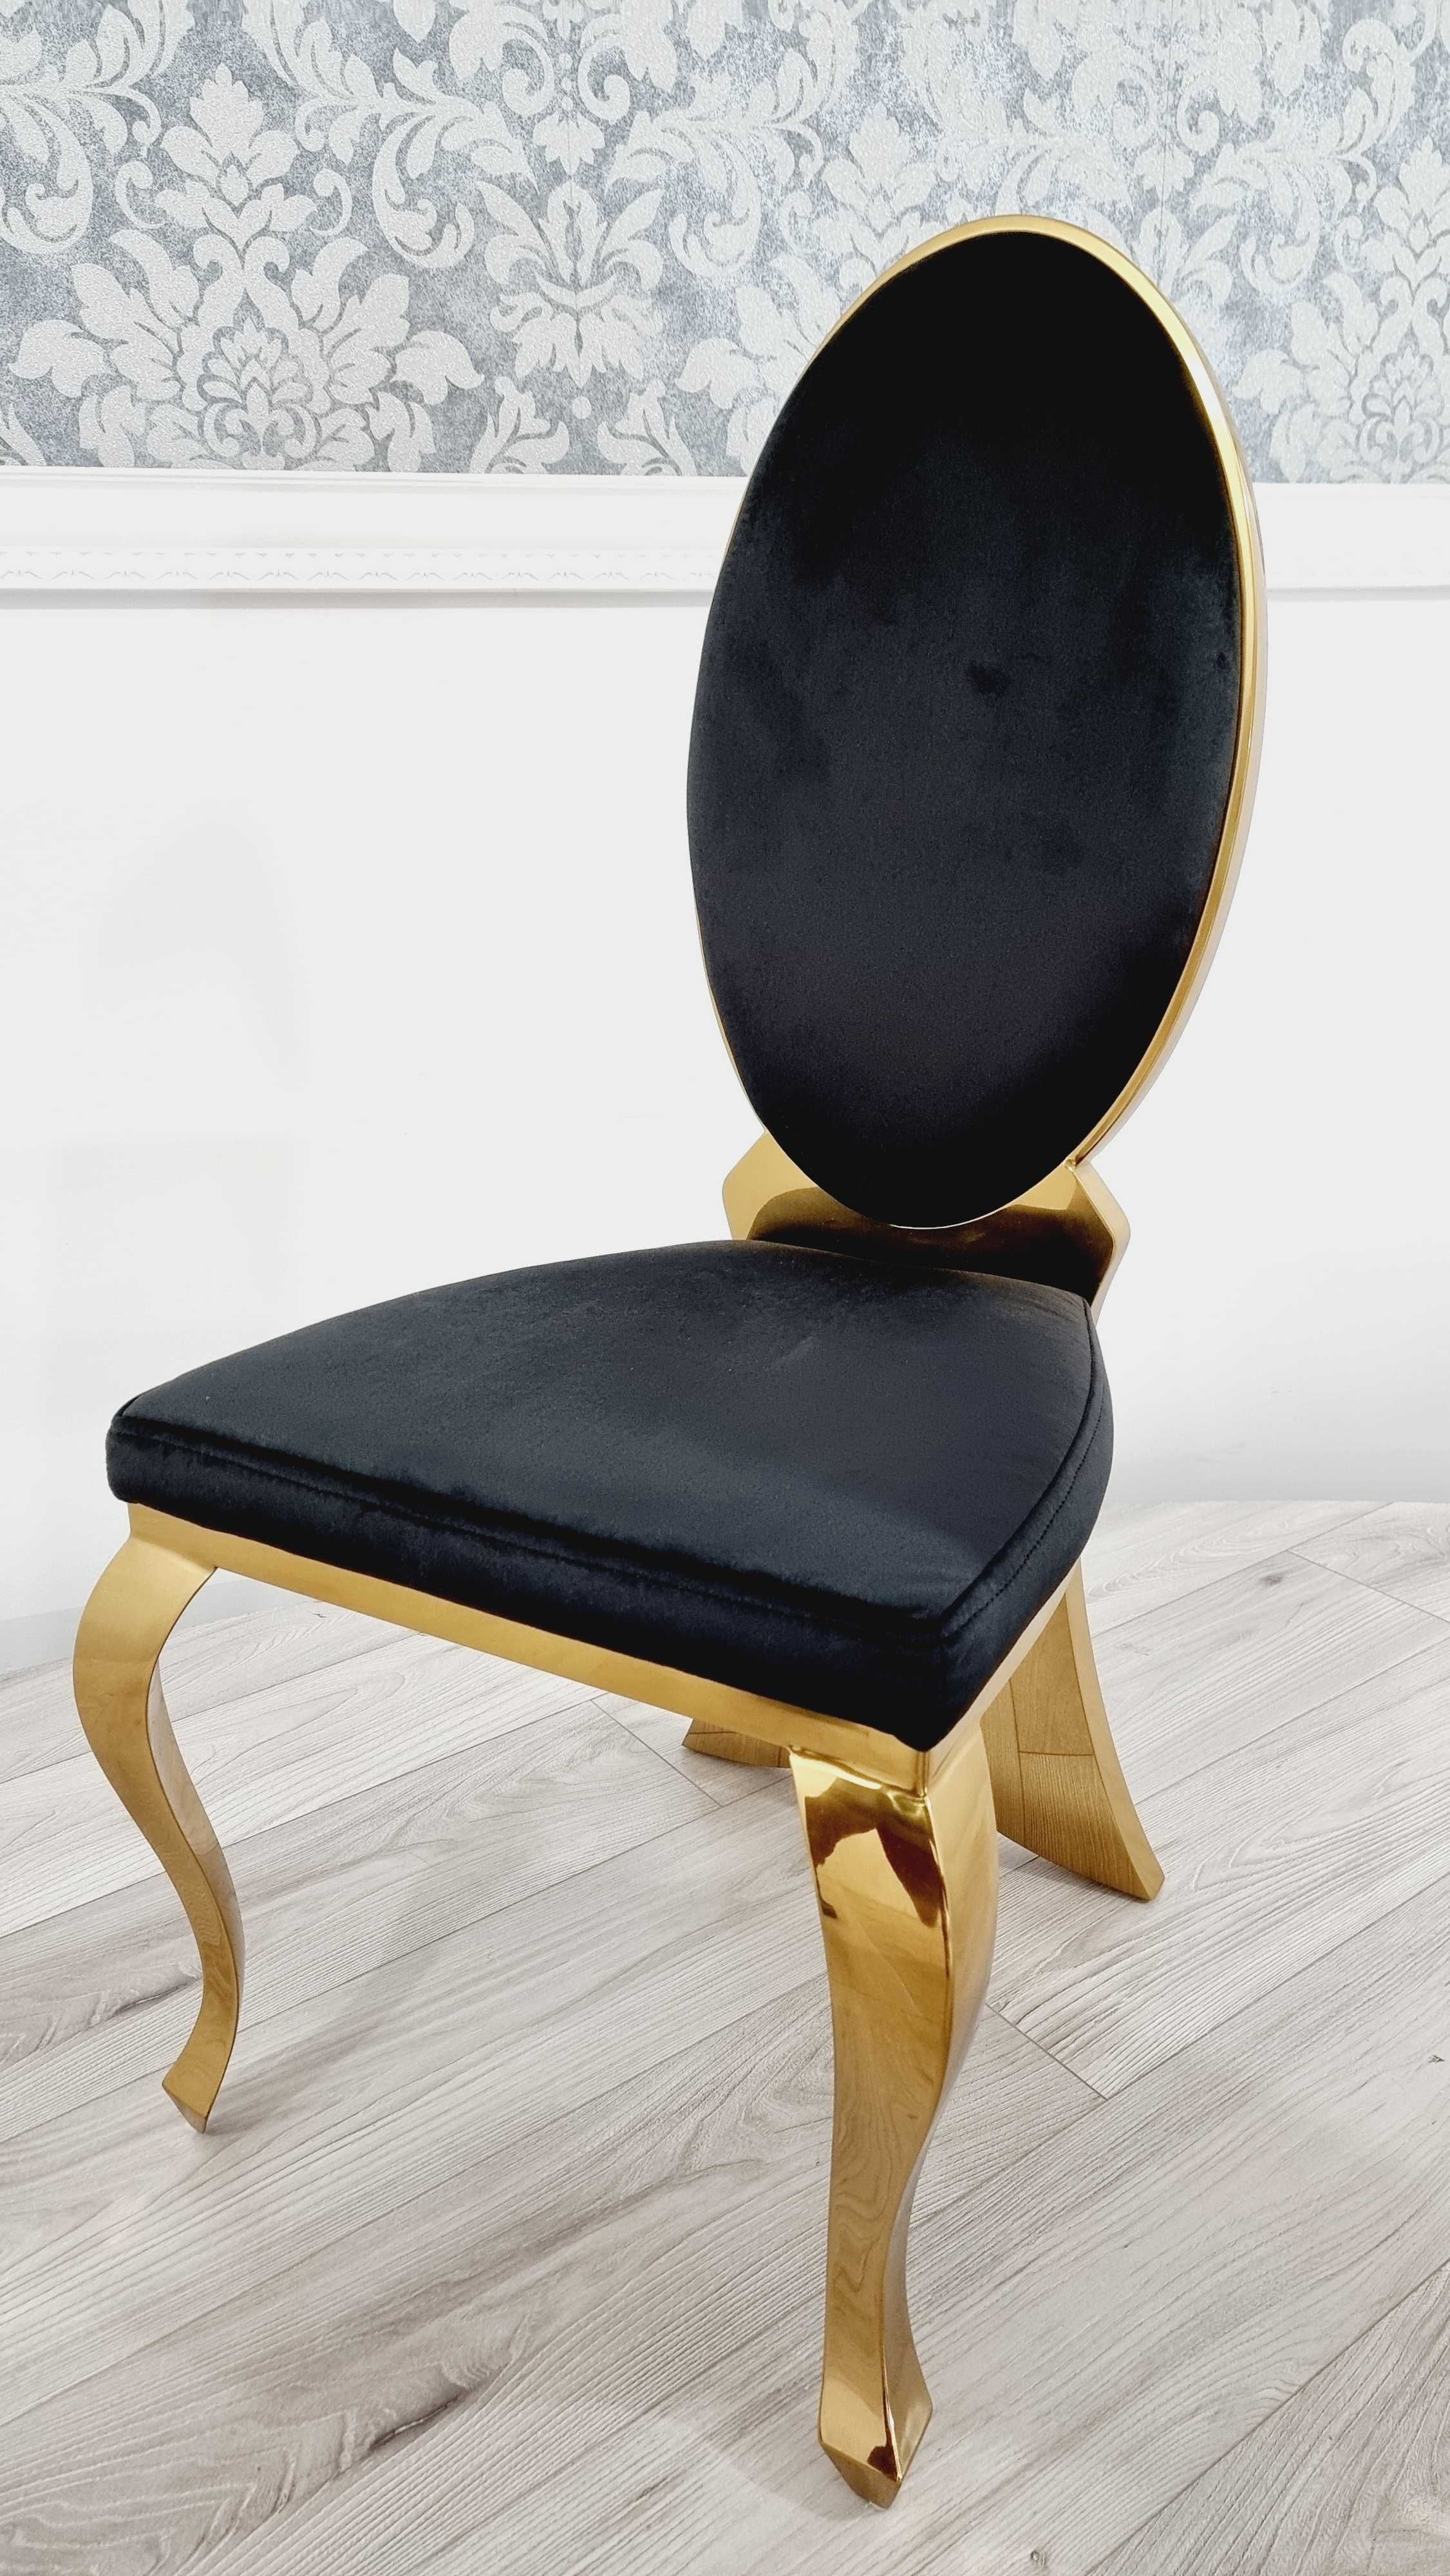 Jadalnia Vlore Stół + 6 krzeseł Glamour GOLD / KOLOR